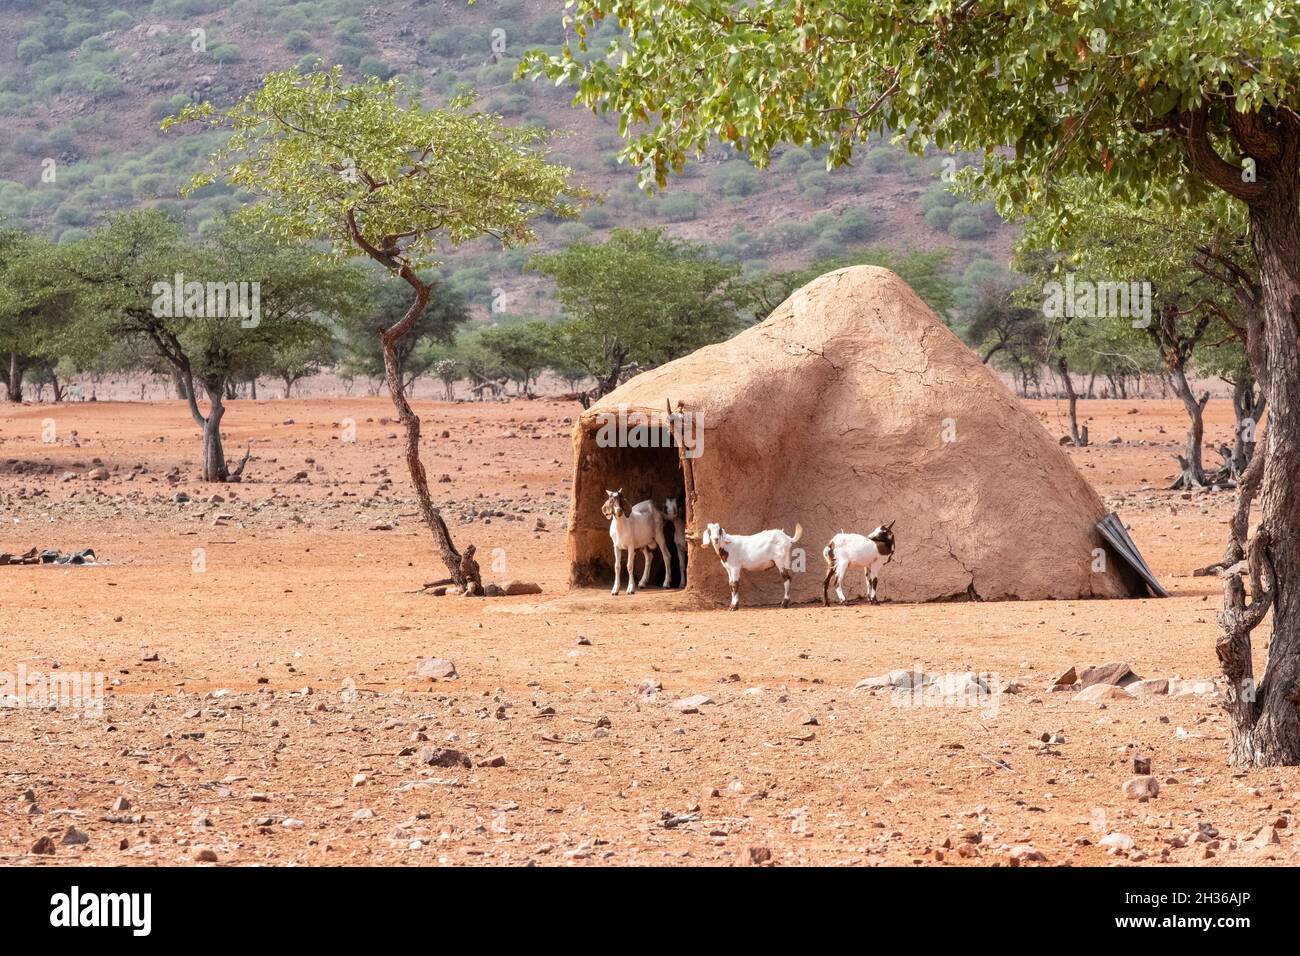 Une cabane en argile ronde Himba traditionnelle. Chèvres devant la maison familiale africaine. Logement local traditionnel. Région de Kunene, Kaokoland, Namibie, Afrique Banque D'Images